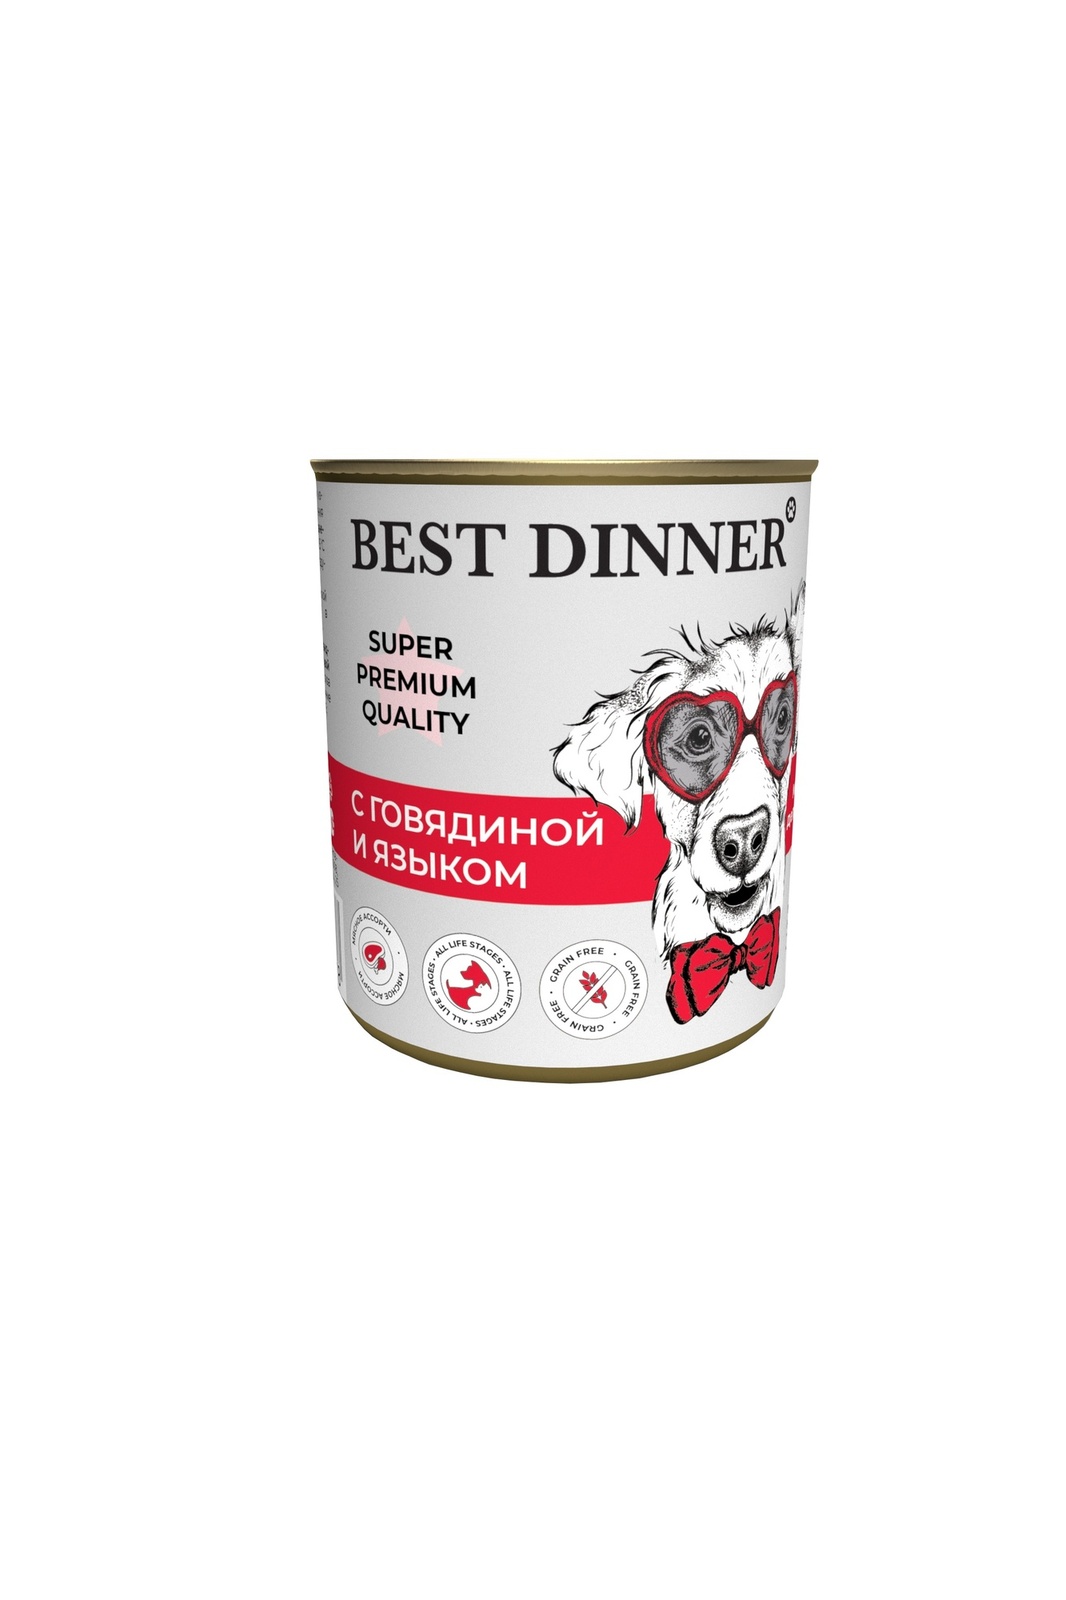 Best Dinner Best Dinner консервы для собак Super Premium С говядиной и языком (340 г) best dinner best dinner консервы конина паштет для собак с чувствительным пищеварением 340 г